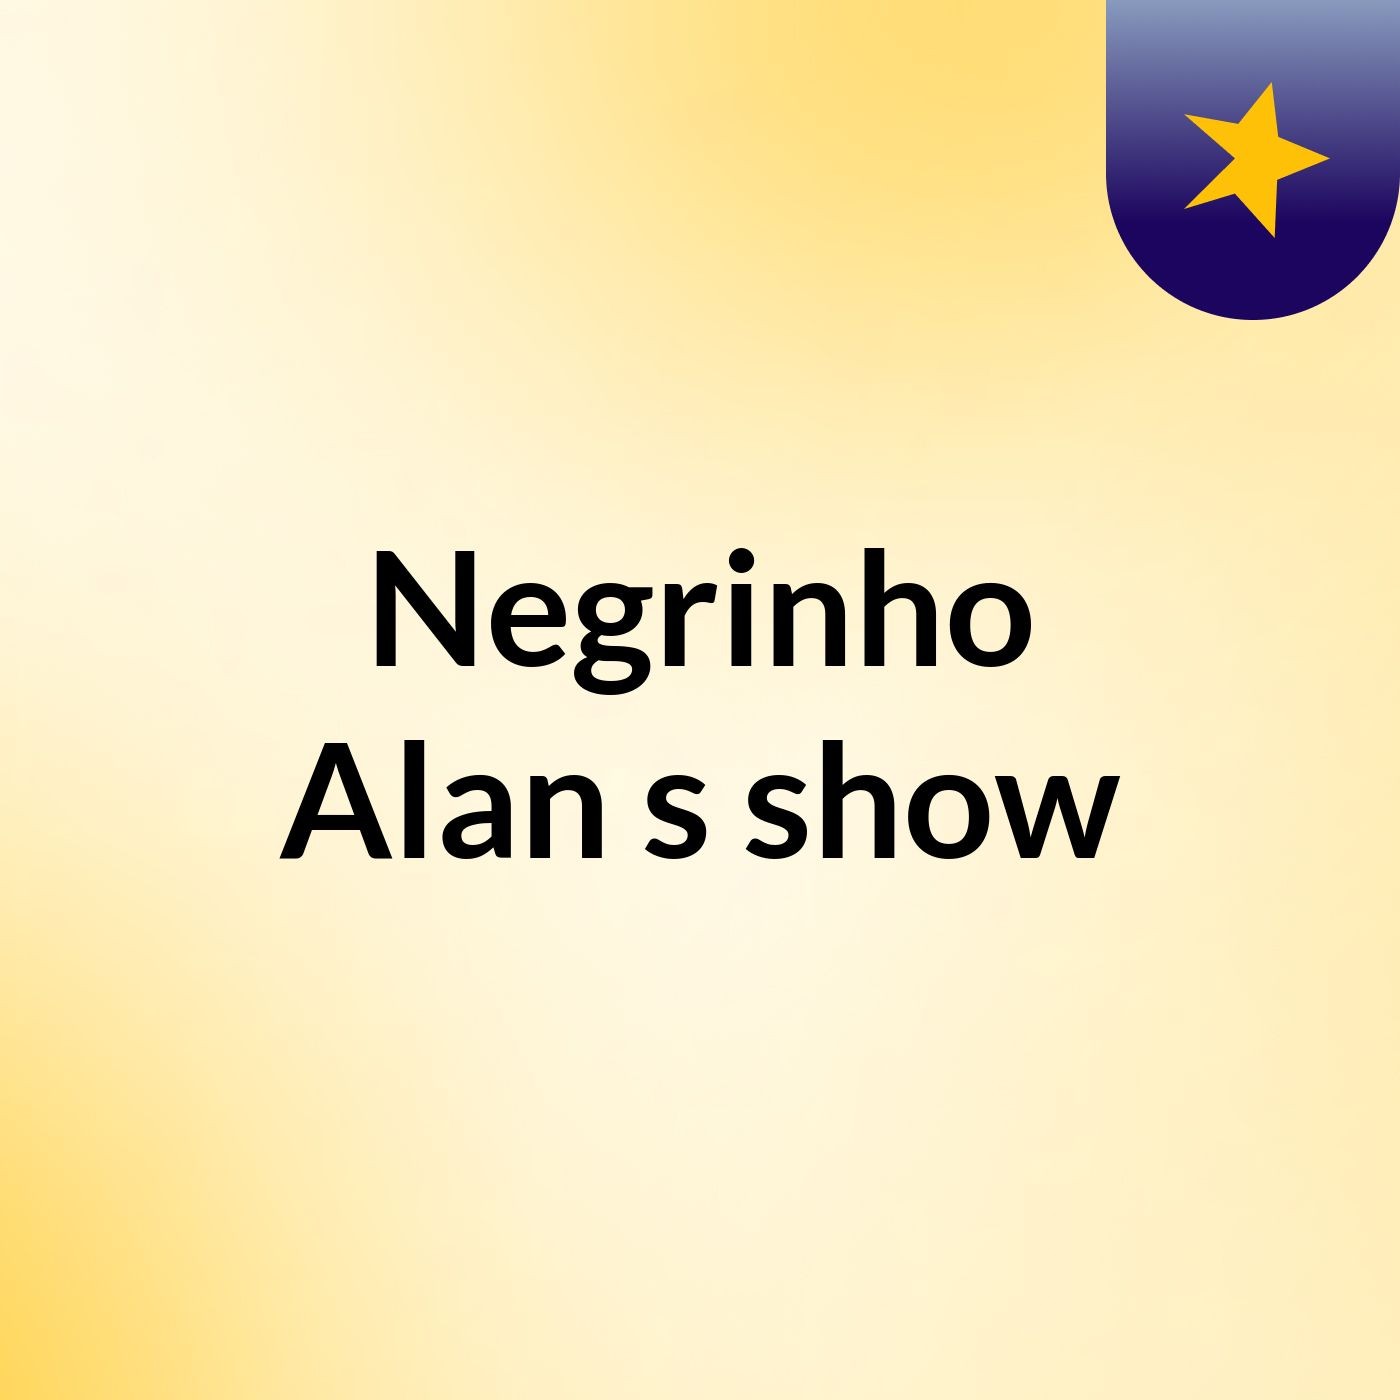 Negrinho Alan's show